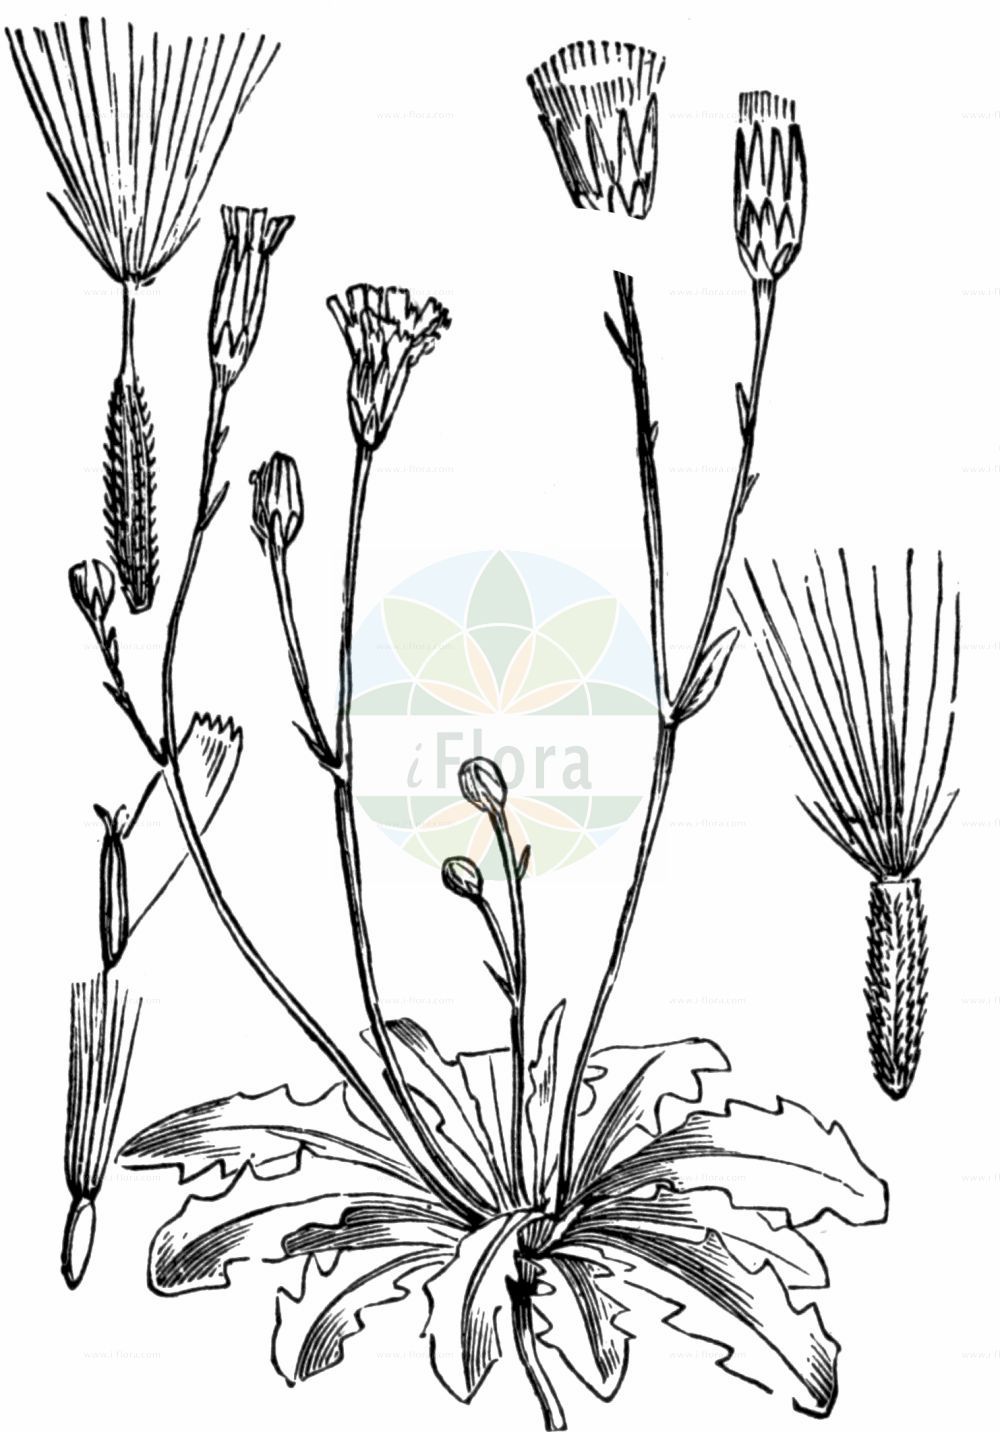 Historische Abbildung von Hypochaeris glabra (Kahles Ferkelkraut - Smooth Cat's-ear). Das Bild zeigt Blatt, Bluete, Frucht und Same. ---- Historical Drawing of Hypochaeris glabra (Kahles Ferkelkraut - Smooth Cat's-ear). The image is showing leaf, flower, fruit and seed.(Hypochaeris glabra,Kahles Ferkelkraut,Smooth Cat's-ear,Hypochaeris balbisii,Hypochaeris glabra,Hypochaeris simplex,Kahles Ferkelkraut,Smooth Cat's-ear,Cat's-ear,False Dandelion,Hypochaeris,Ferkelkraut,Cat's Ear,Asteraceae,Korbblütengewächse,Daisy family,Blatt,Bluete,Frucht,Same,leaf,flower,fruit,seed,Fitch et al. (1880))